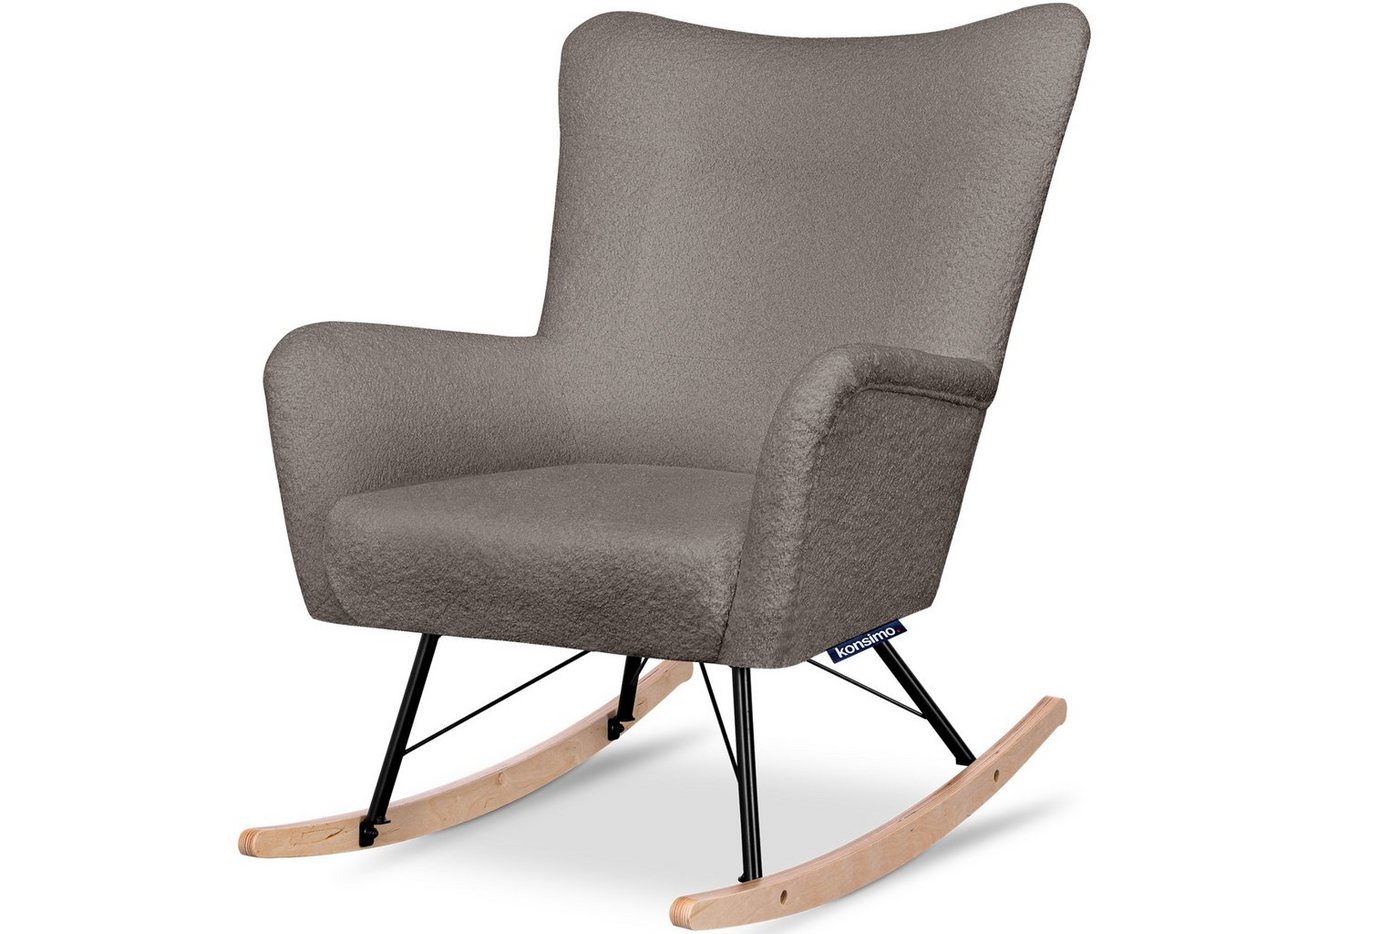 Konsimo Schaukelsessel ADDUCTI Stillsessel, breiter Sitz für mehr Komfort, ein Schaukelstuhl für jeden Stil, Hergestellt in EU von Konsimo